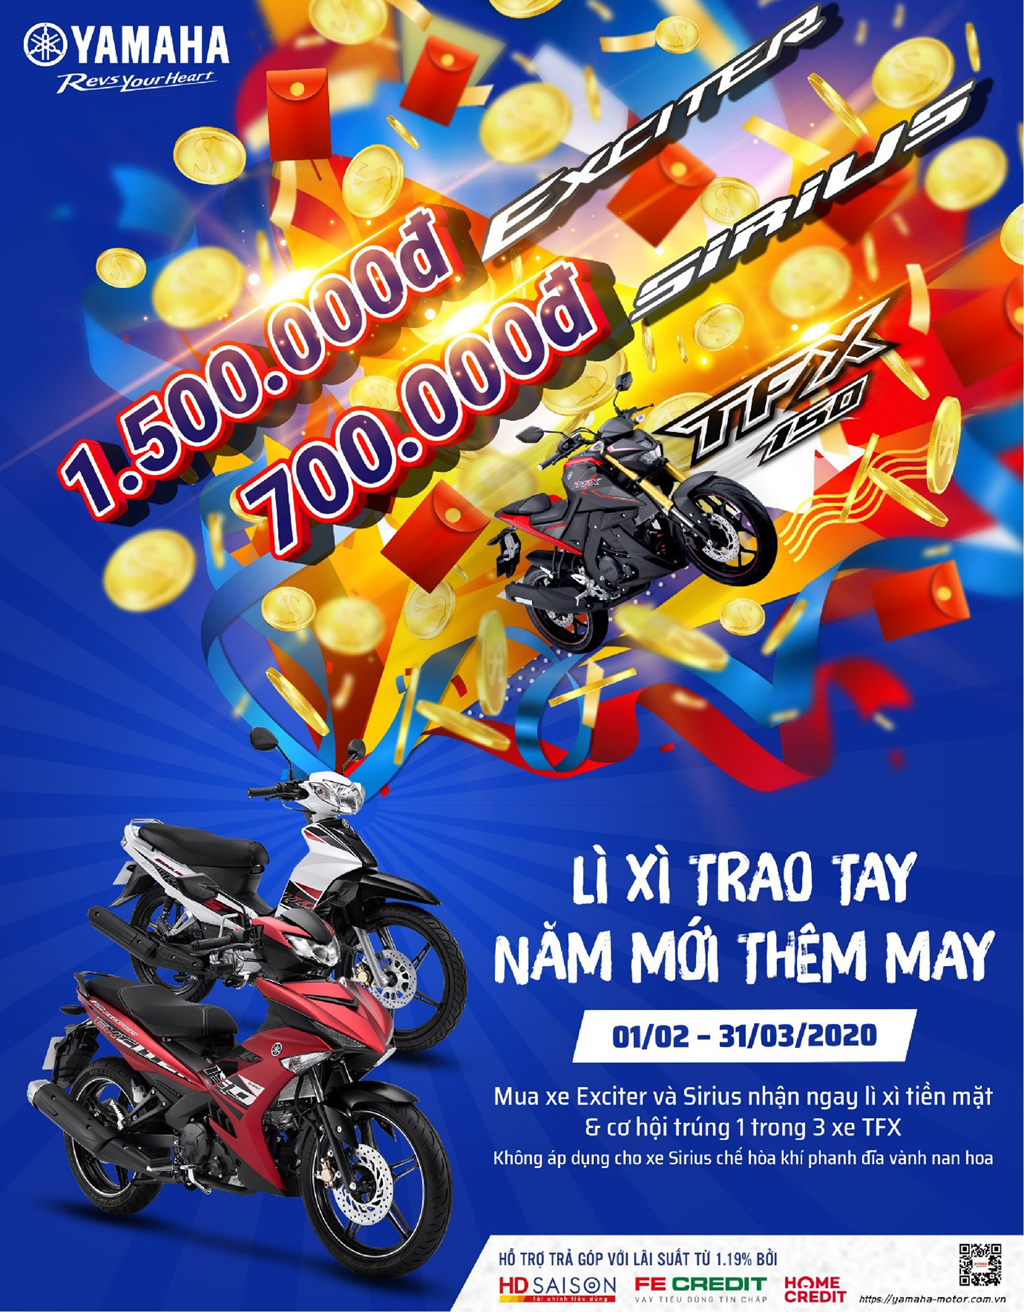 Cơ hội trúng xe máy Yamaha TFX trị giá 72.900.000 VNĐ khi mua Exciter/ Sirius/ Sirius FI